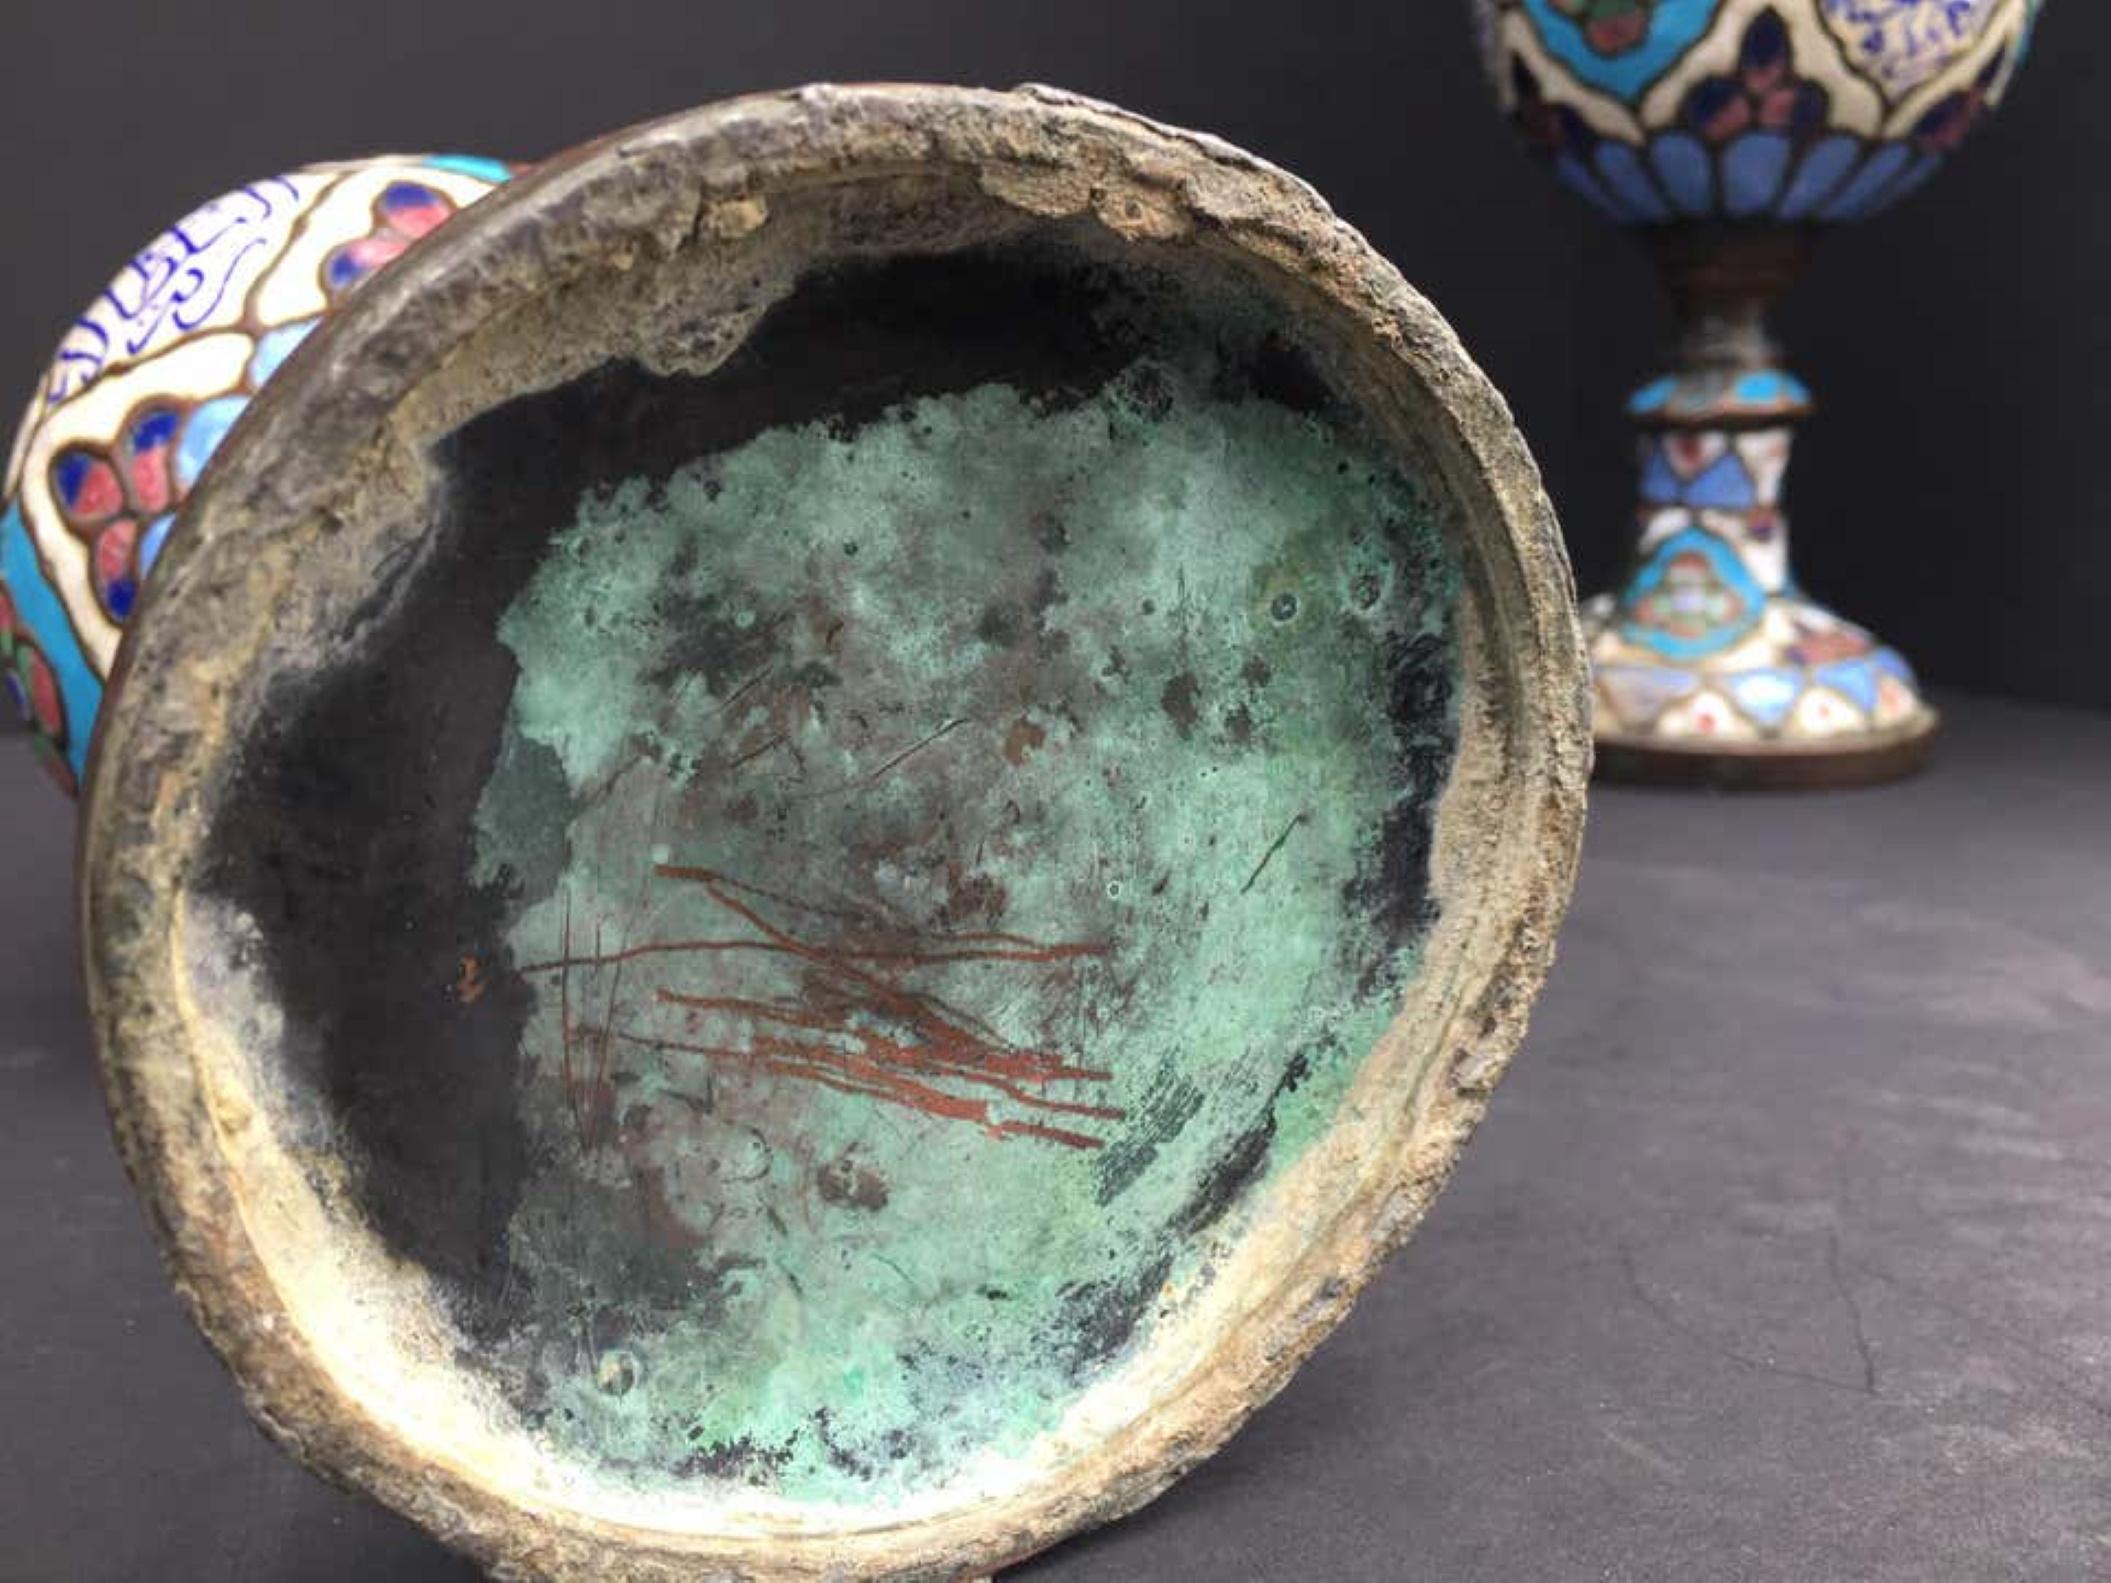 Dies ist ein außergewöhnliches und historisches Paar emaillierter Metallgefäße oder Urnen aus Damaskus. Diese Kunstgegenstände weisen Spuren von rauem Gebrauch und Handhabung im Laufe der Jahrhunderte auf. Obwohl es fast unmöglich ist, das Alter von